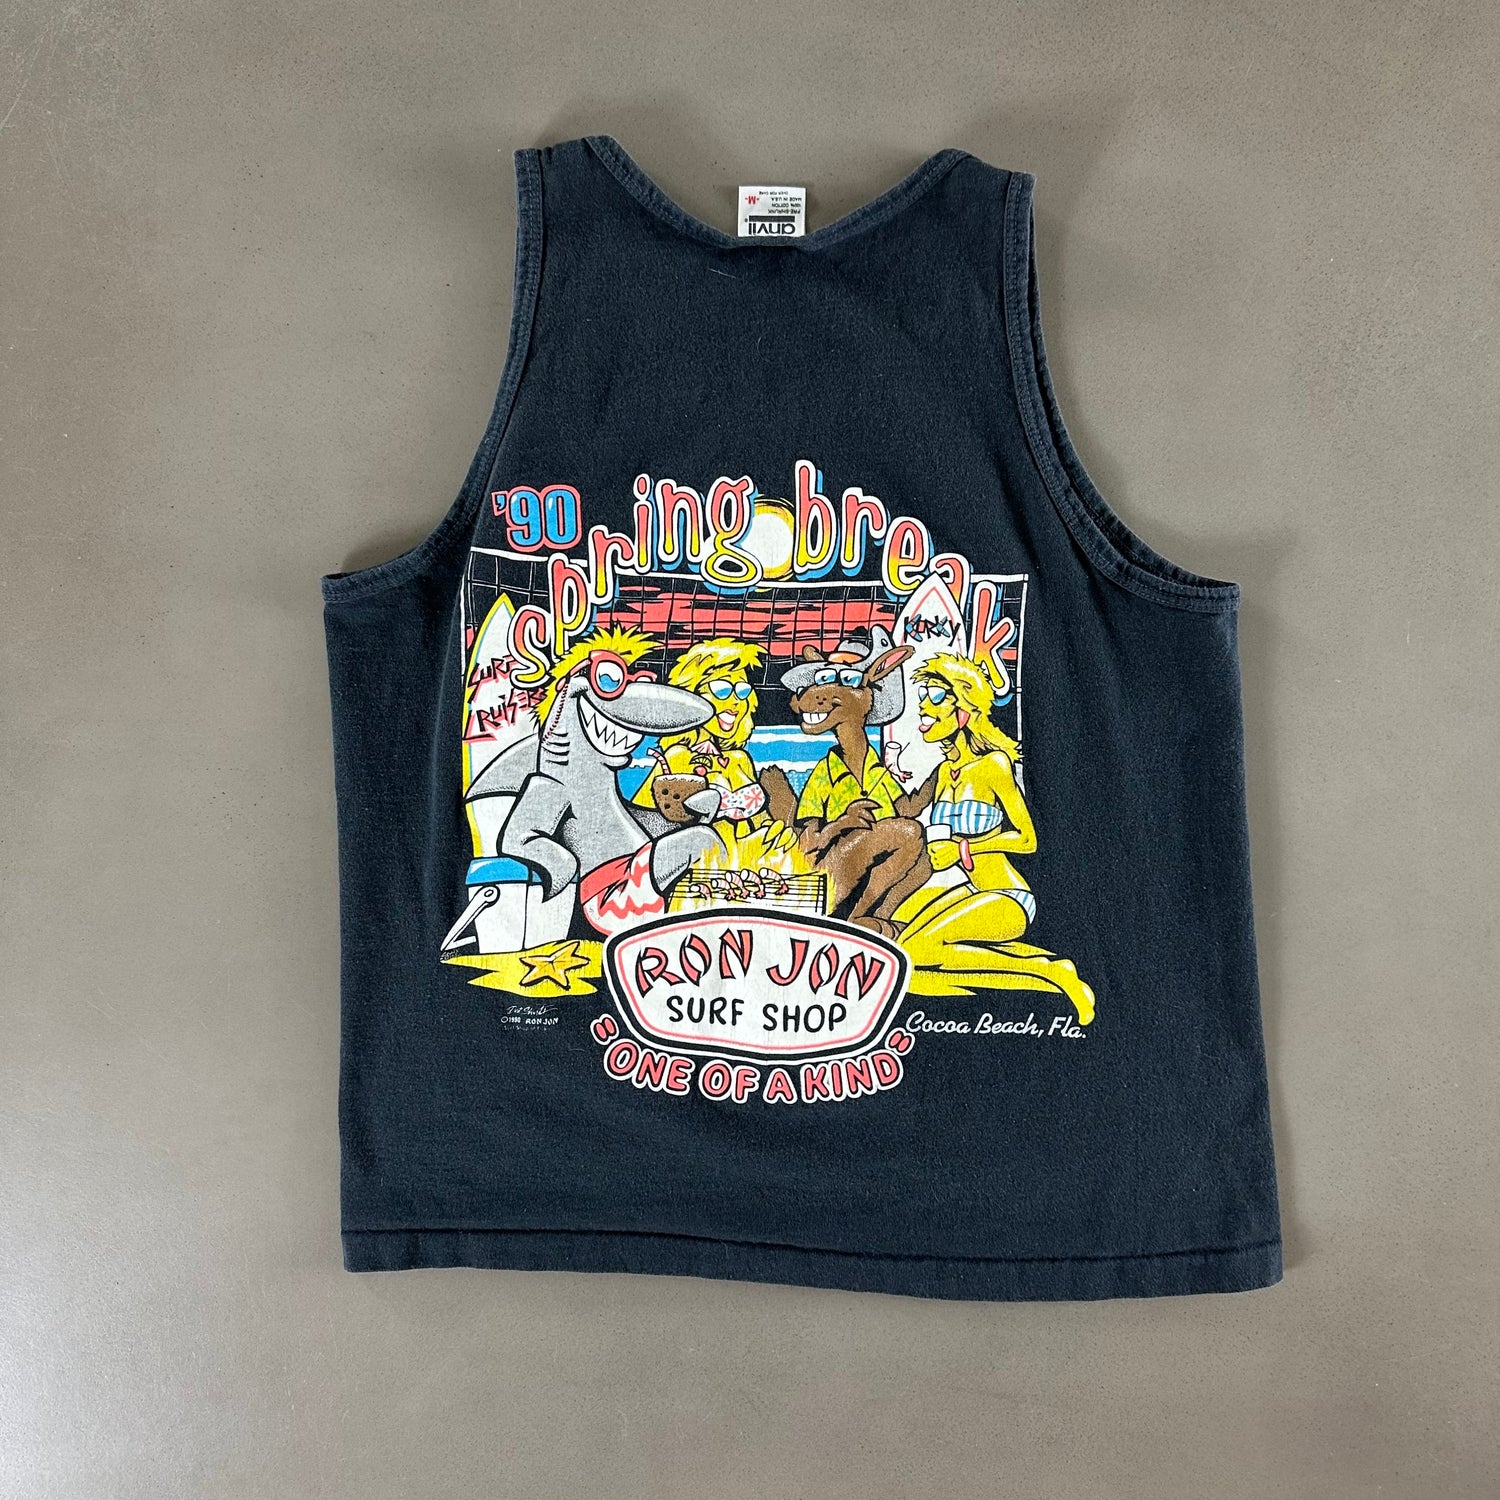 Vintage 1990s Ron Jon T-shirt size Medium